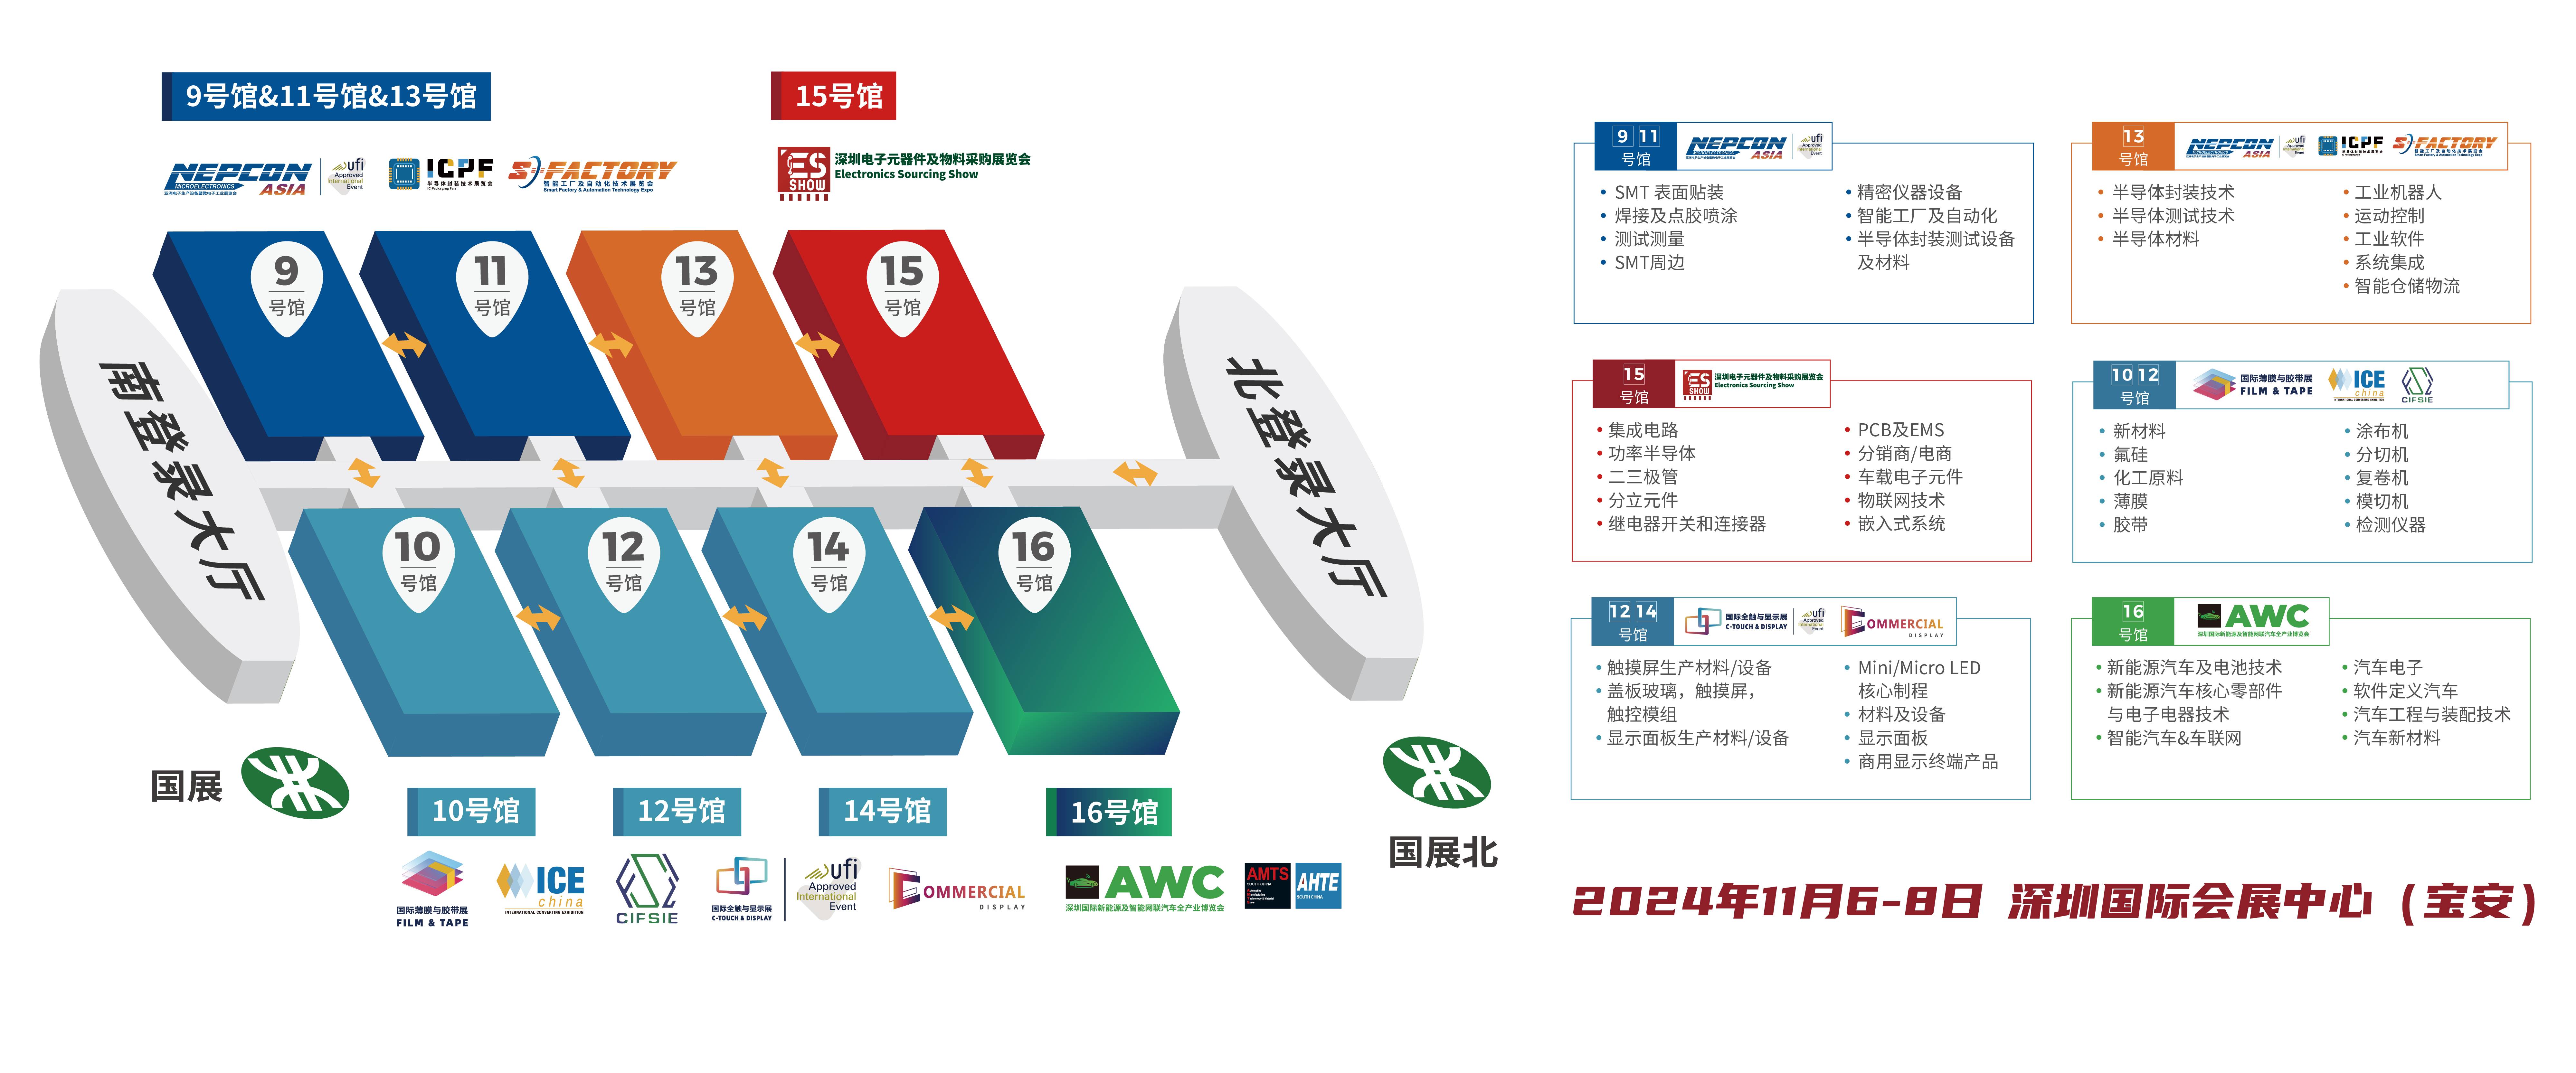 天玑 CPU 智能手机 深圳电子展 华南电子展 中国电子展